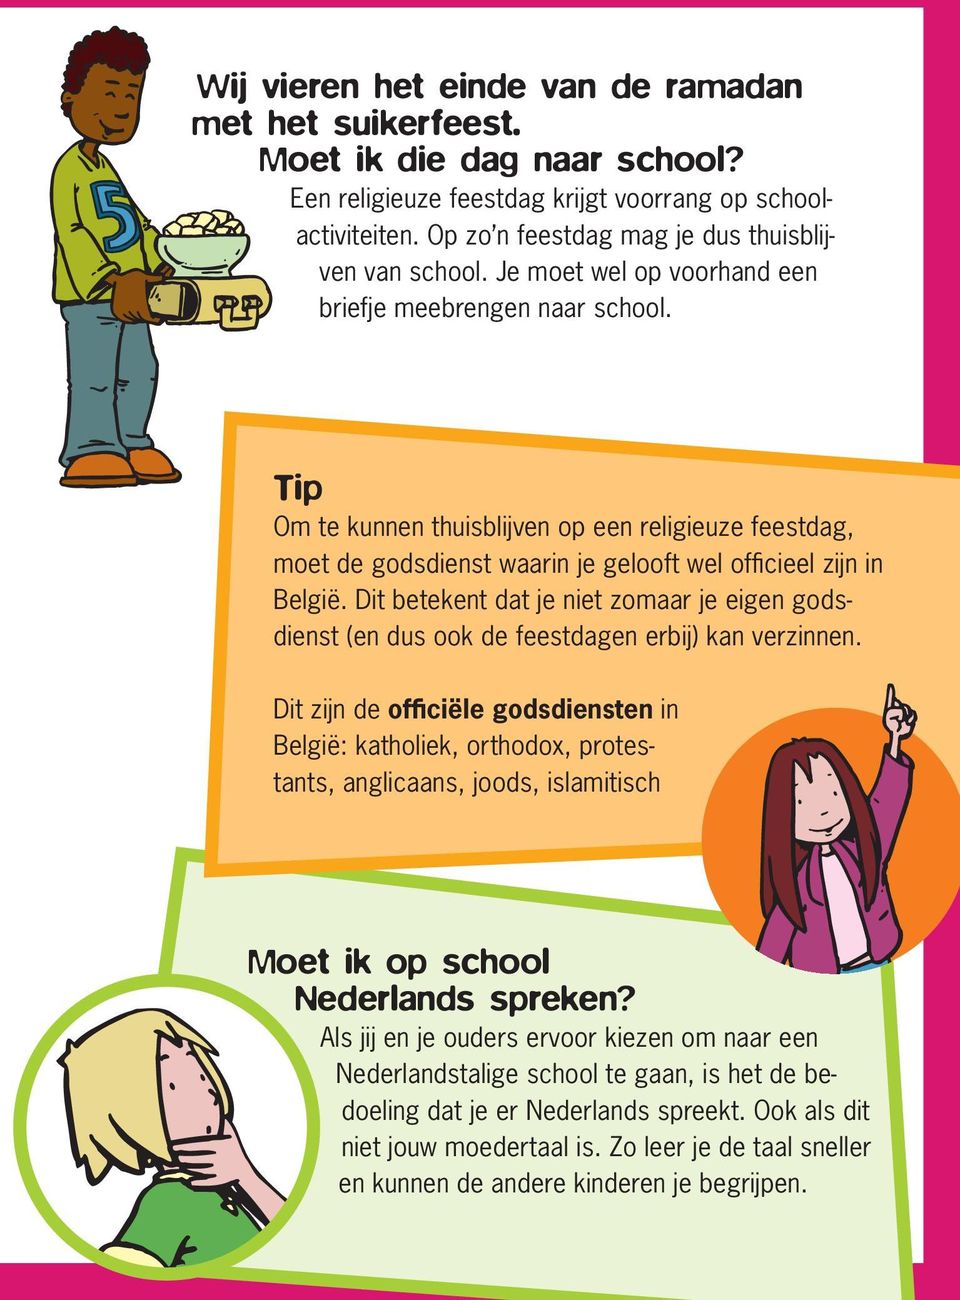 Tip Om te kunnen thuisblijven op een religieuze feestdag, moet de godsdienst waarin je gelooft wel officieel zijn in België.